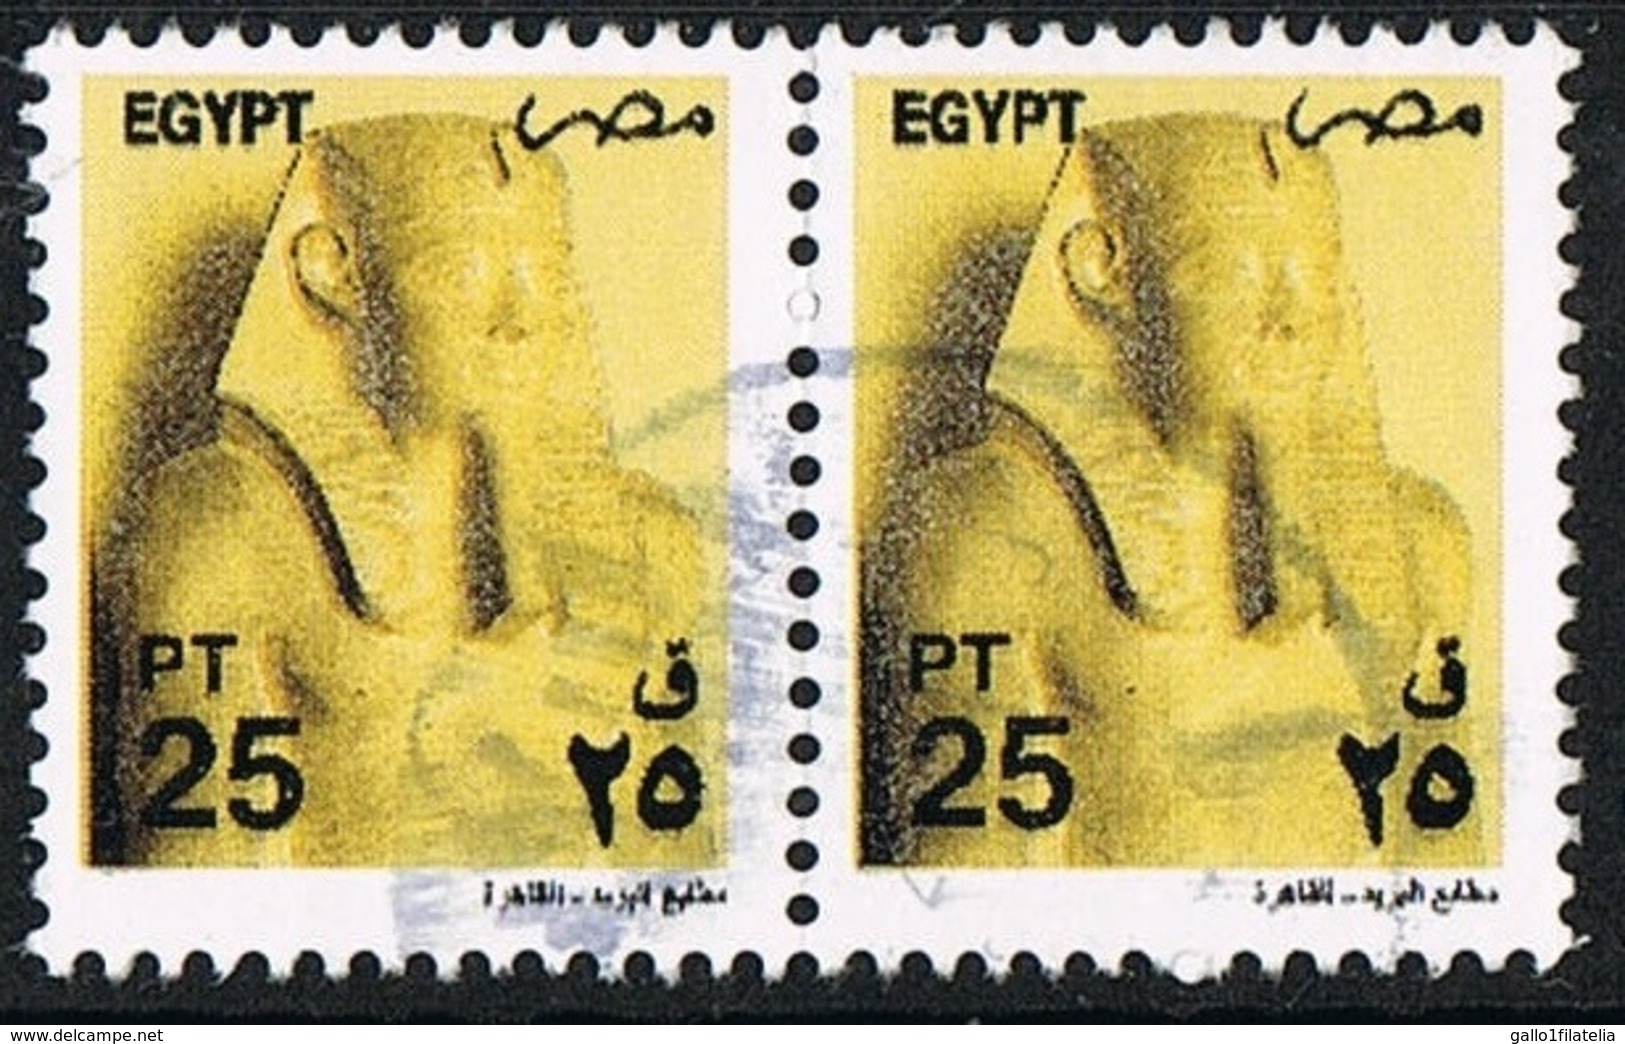 2000 - EGITTO / EGYPT - ARCHEOLOGIA - RE SEOSTRIS / KING SEOSTRIS - USATO/USED - Gebraucht